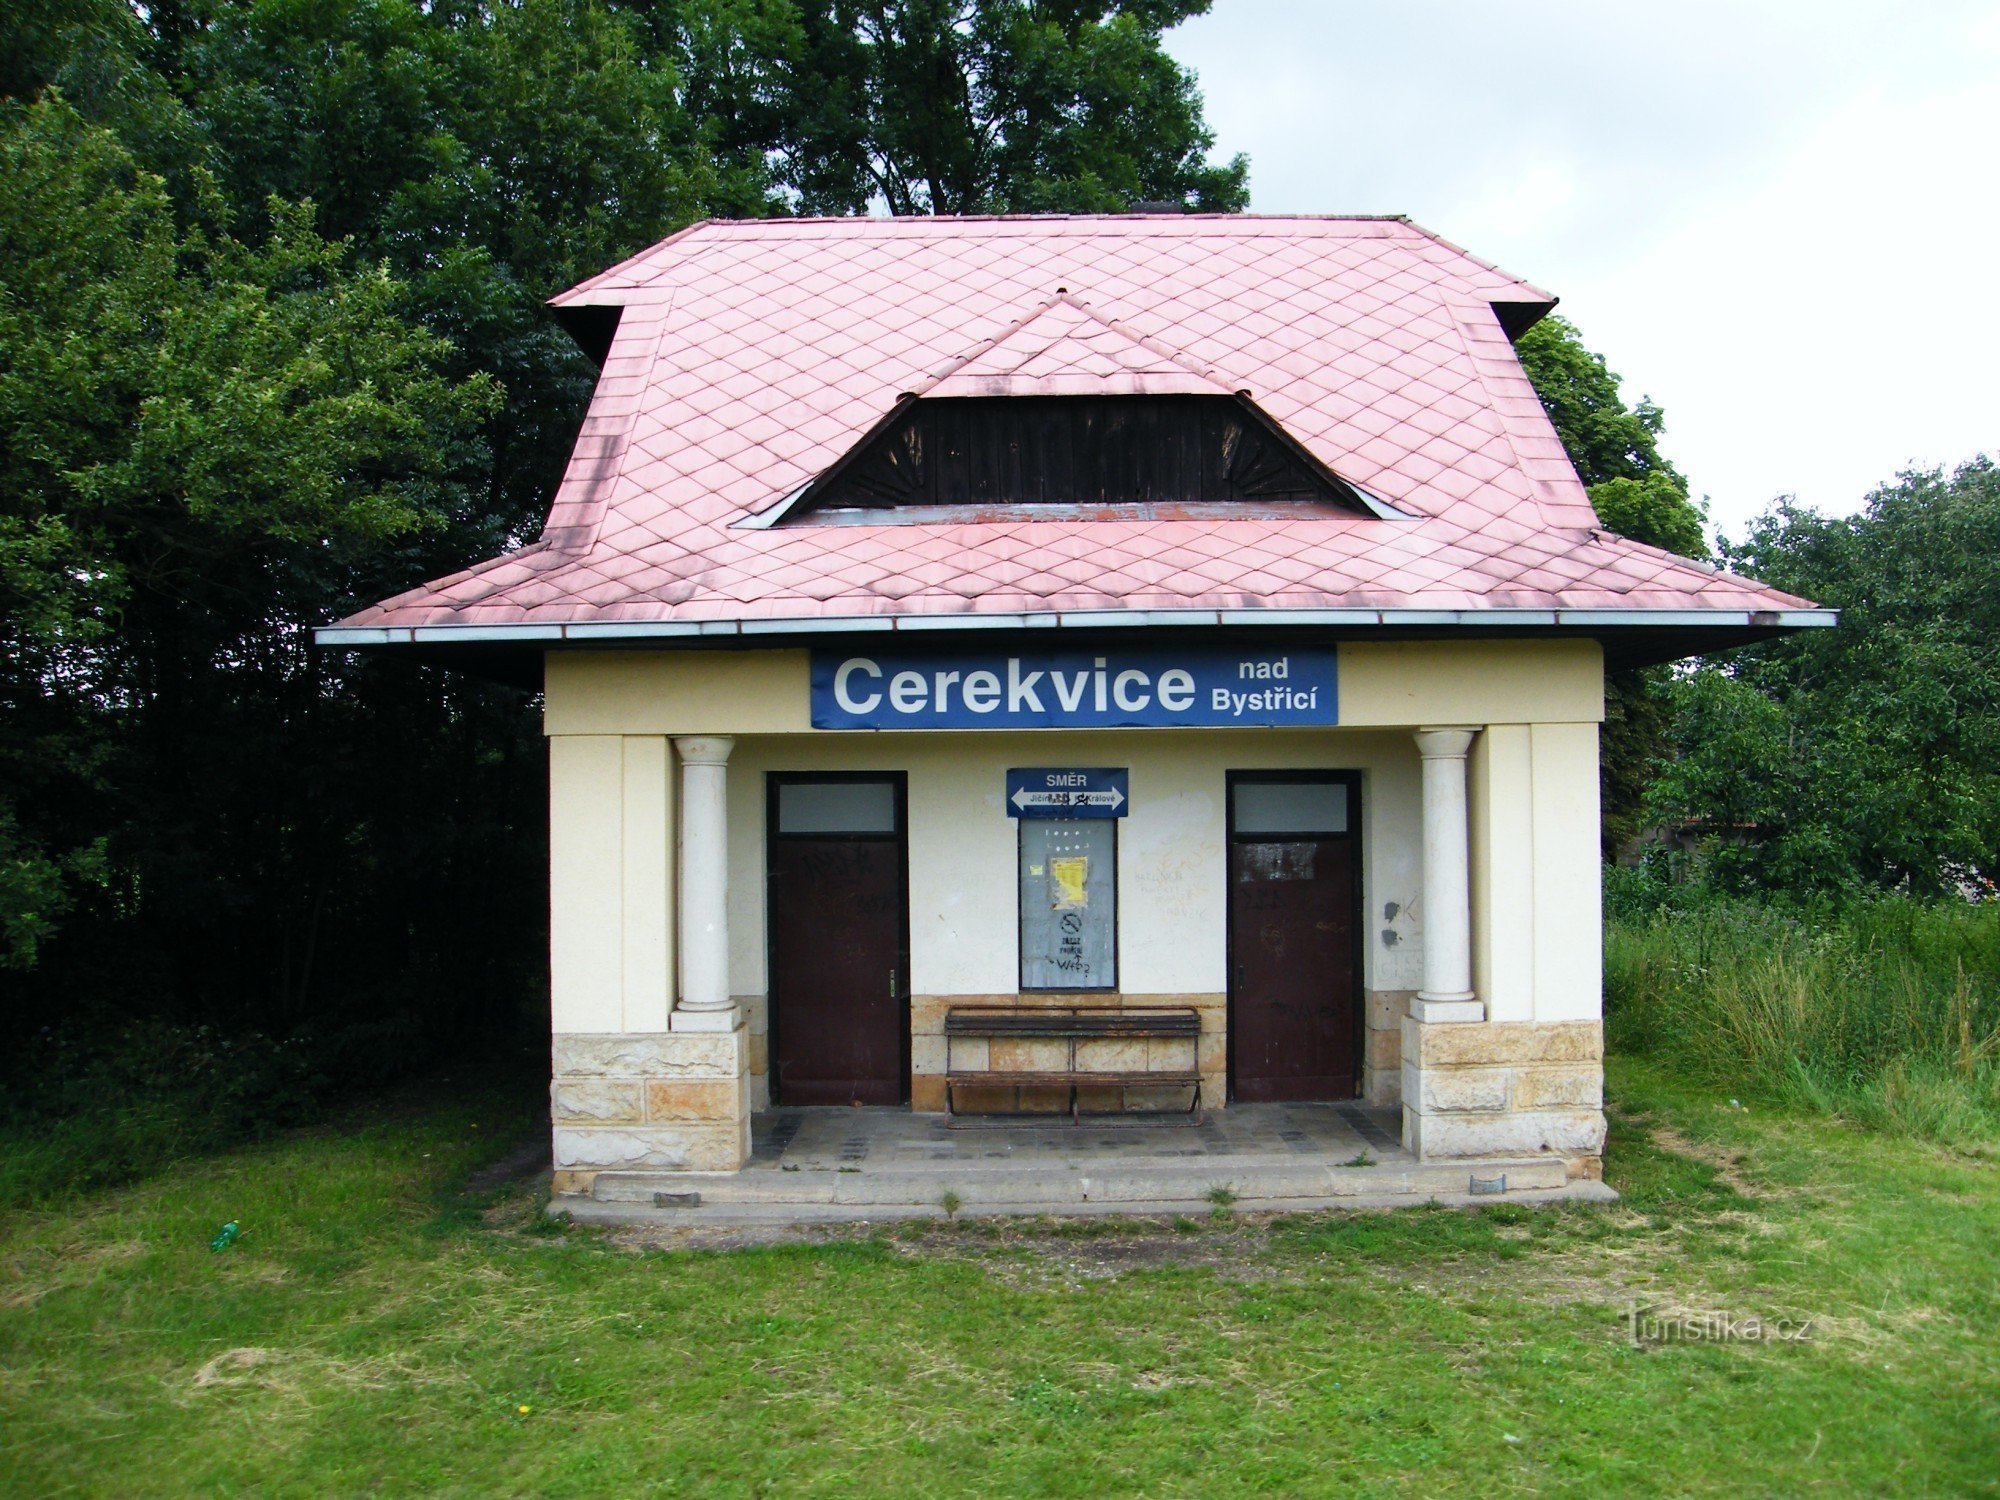 Cerekvice nad Bystřicí - postajališče vlaka